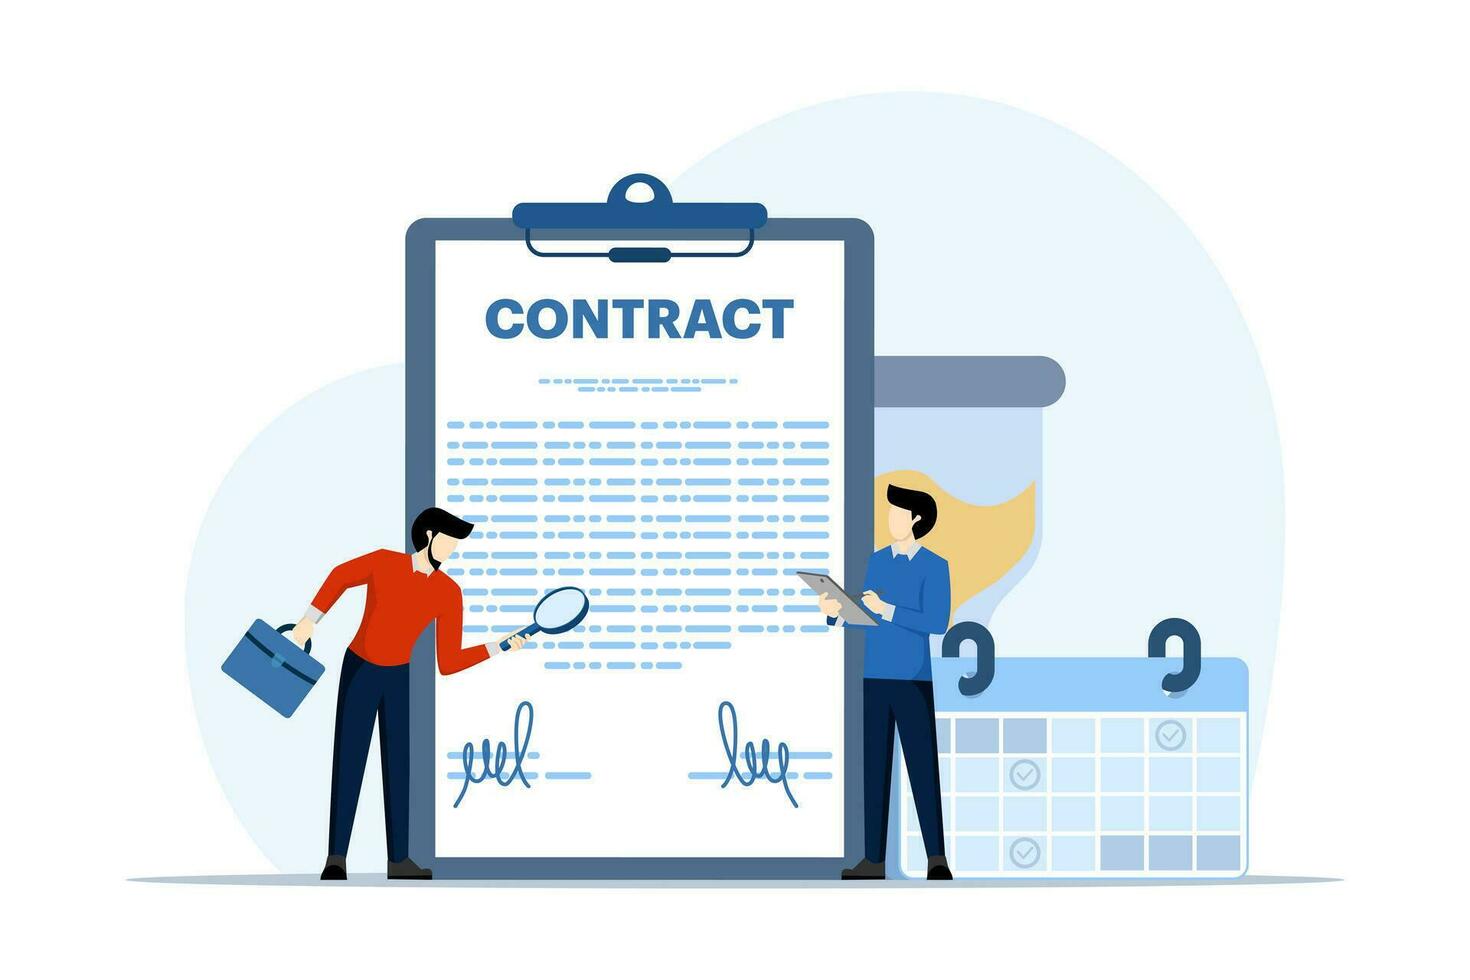 Vertrag Zustimmung mit Klient, Geschäft handeln, Zusammenarbeit Zustimmung oder dokumentieren, erfolgreich Vertrag oder Verhandlung, Unterzeichnung von Geschäft Zustimmung dokumentieren. eben Vektor Illustration.